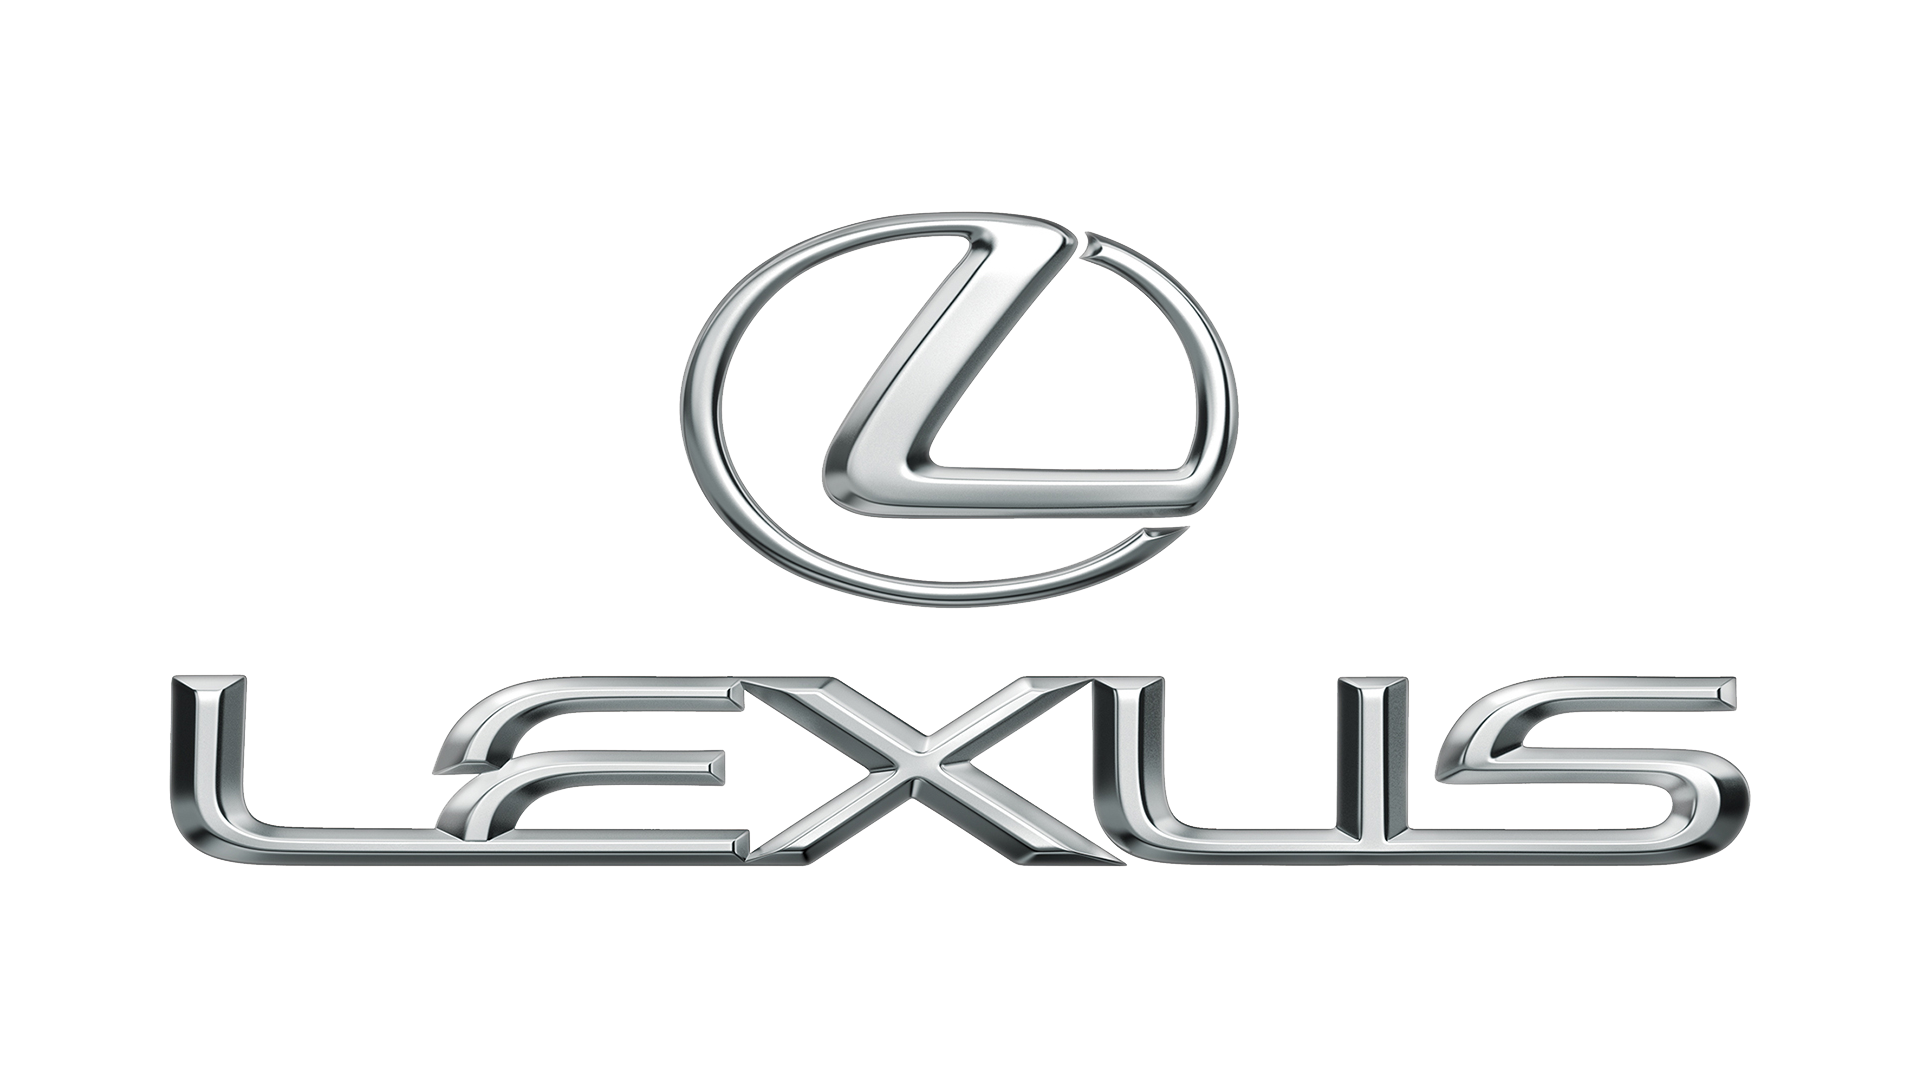 Lexus Logos